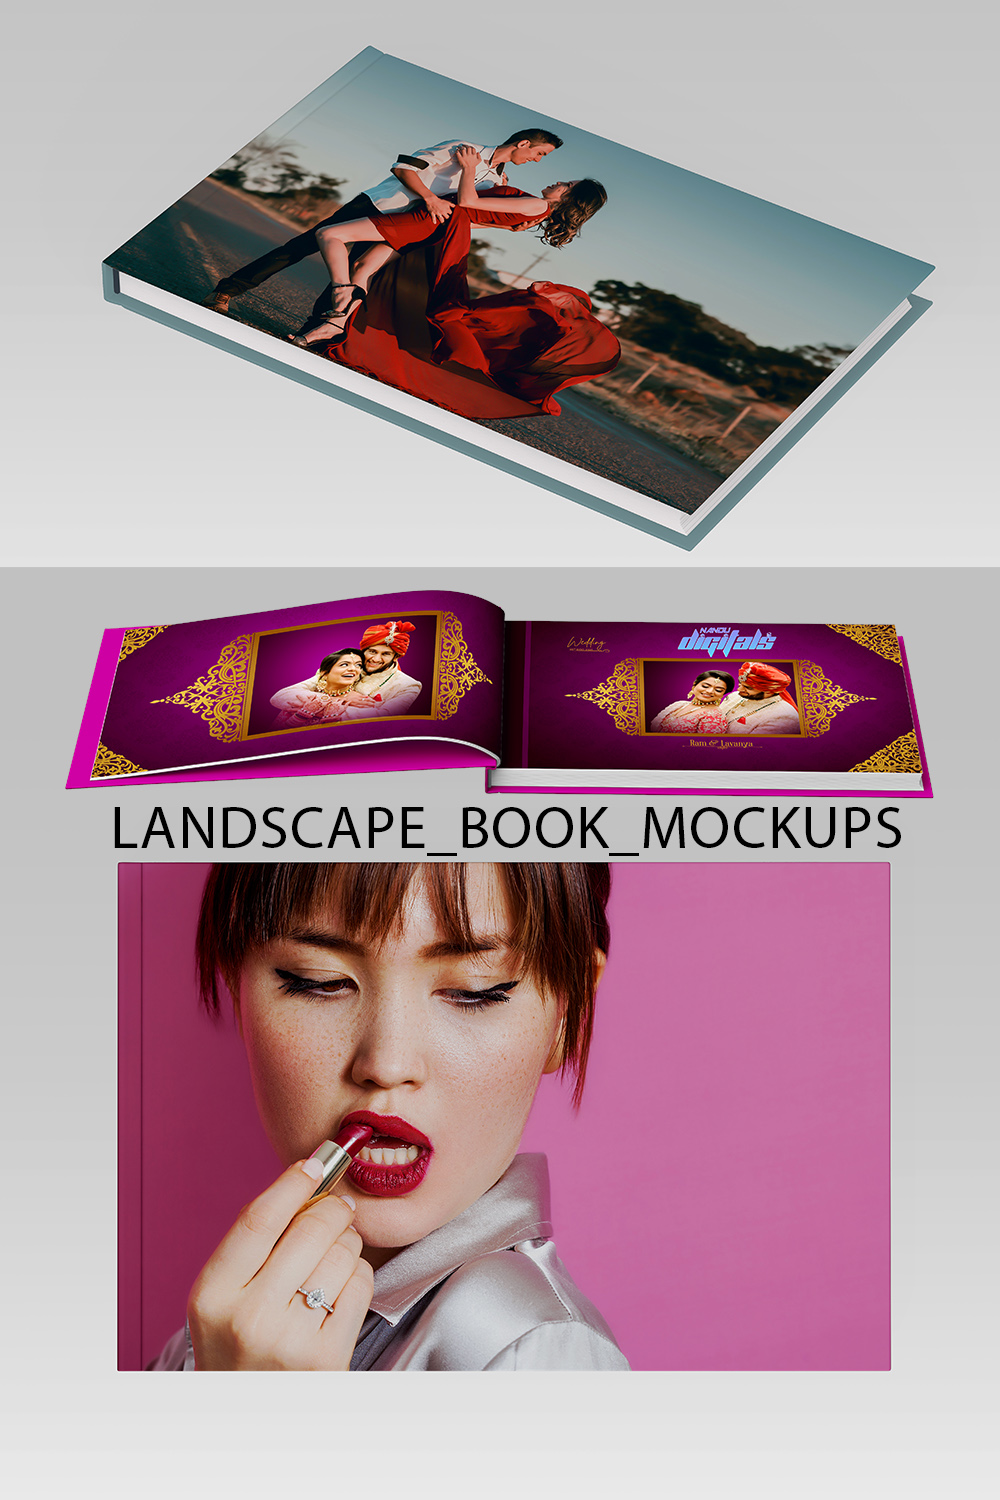 Wedding Fashion Landscape Book Mockups 3 Bundle pinterest preview image.